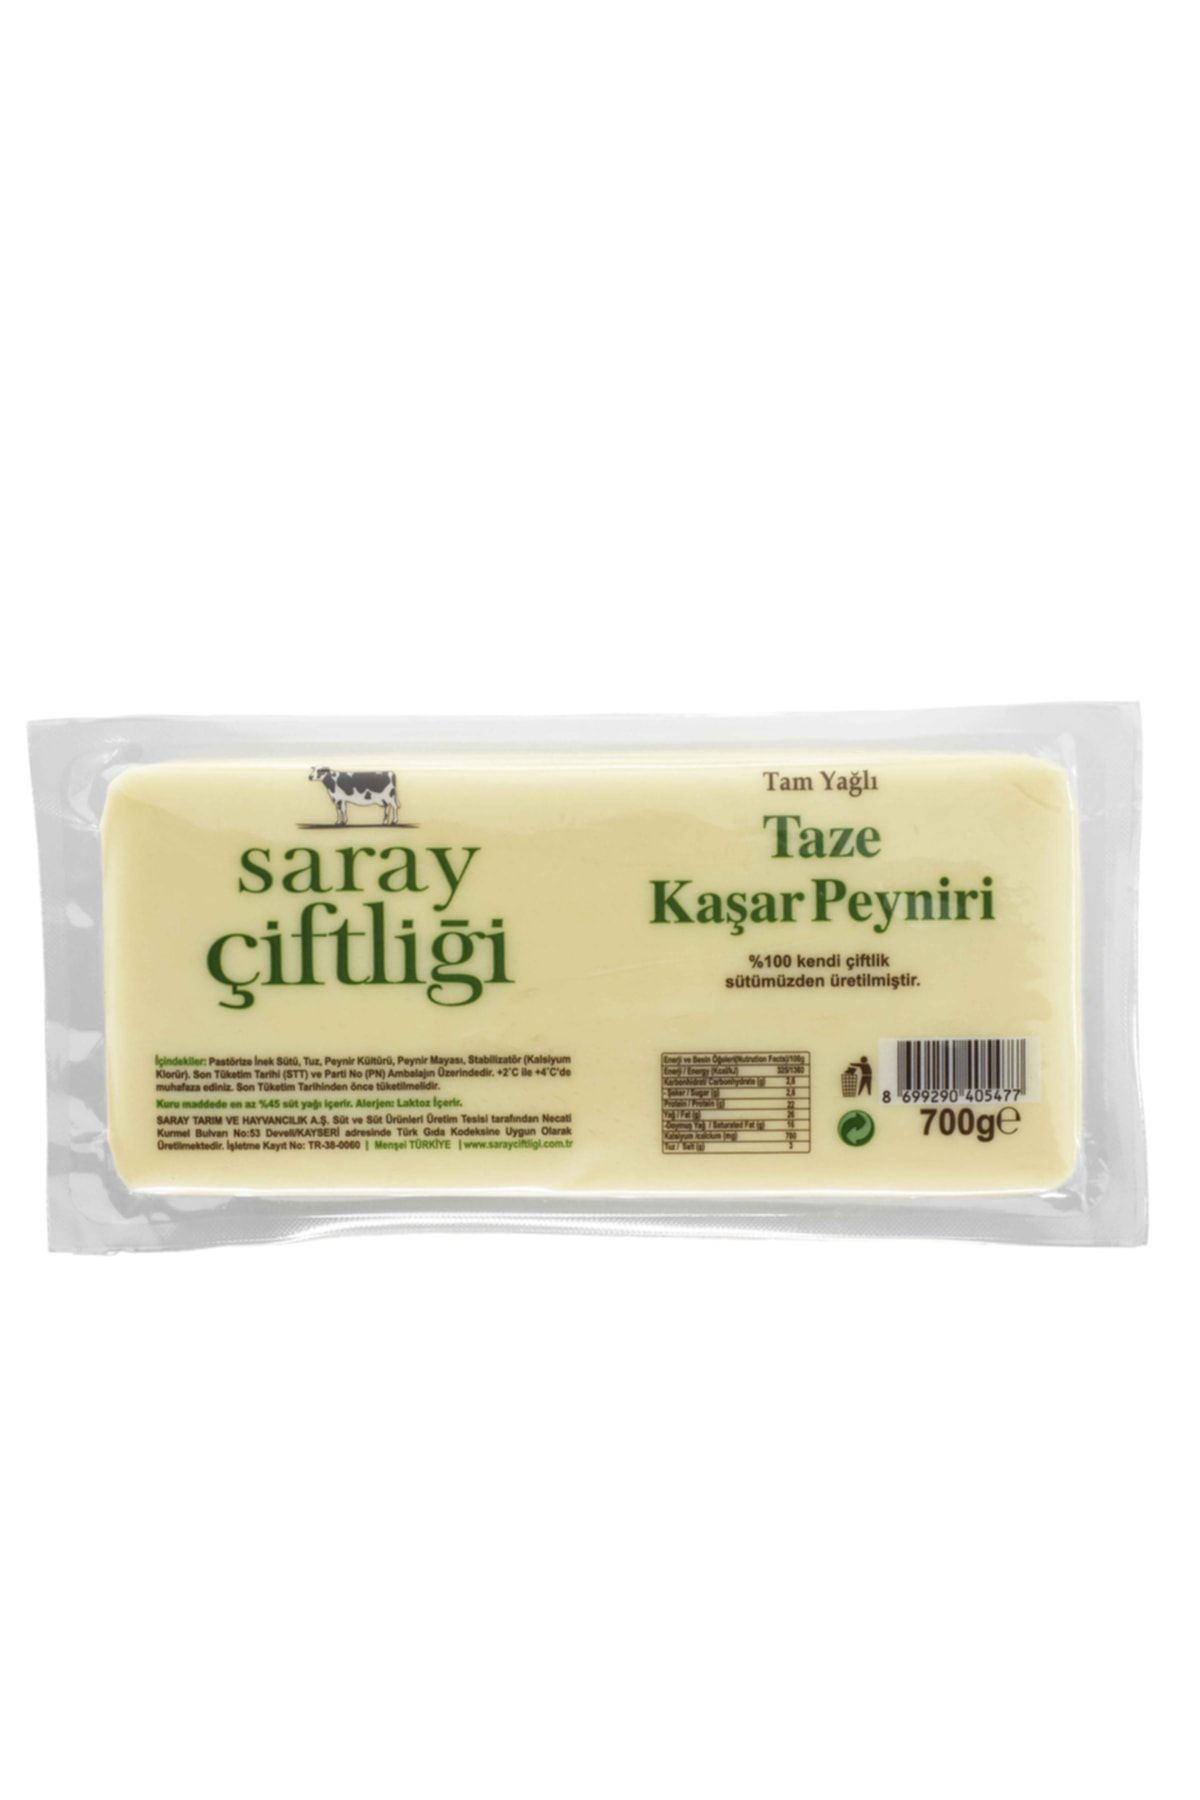 Saray Çiftliği Tam Yağlı Kaşar Peyniri 700gr ( %100 Kendi Çiftlik Sütümüzden Üretilmiştir. )